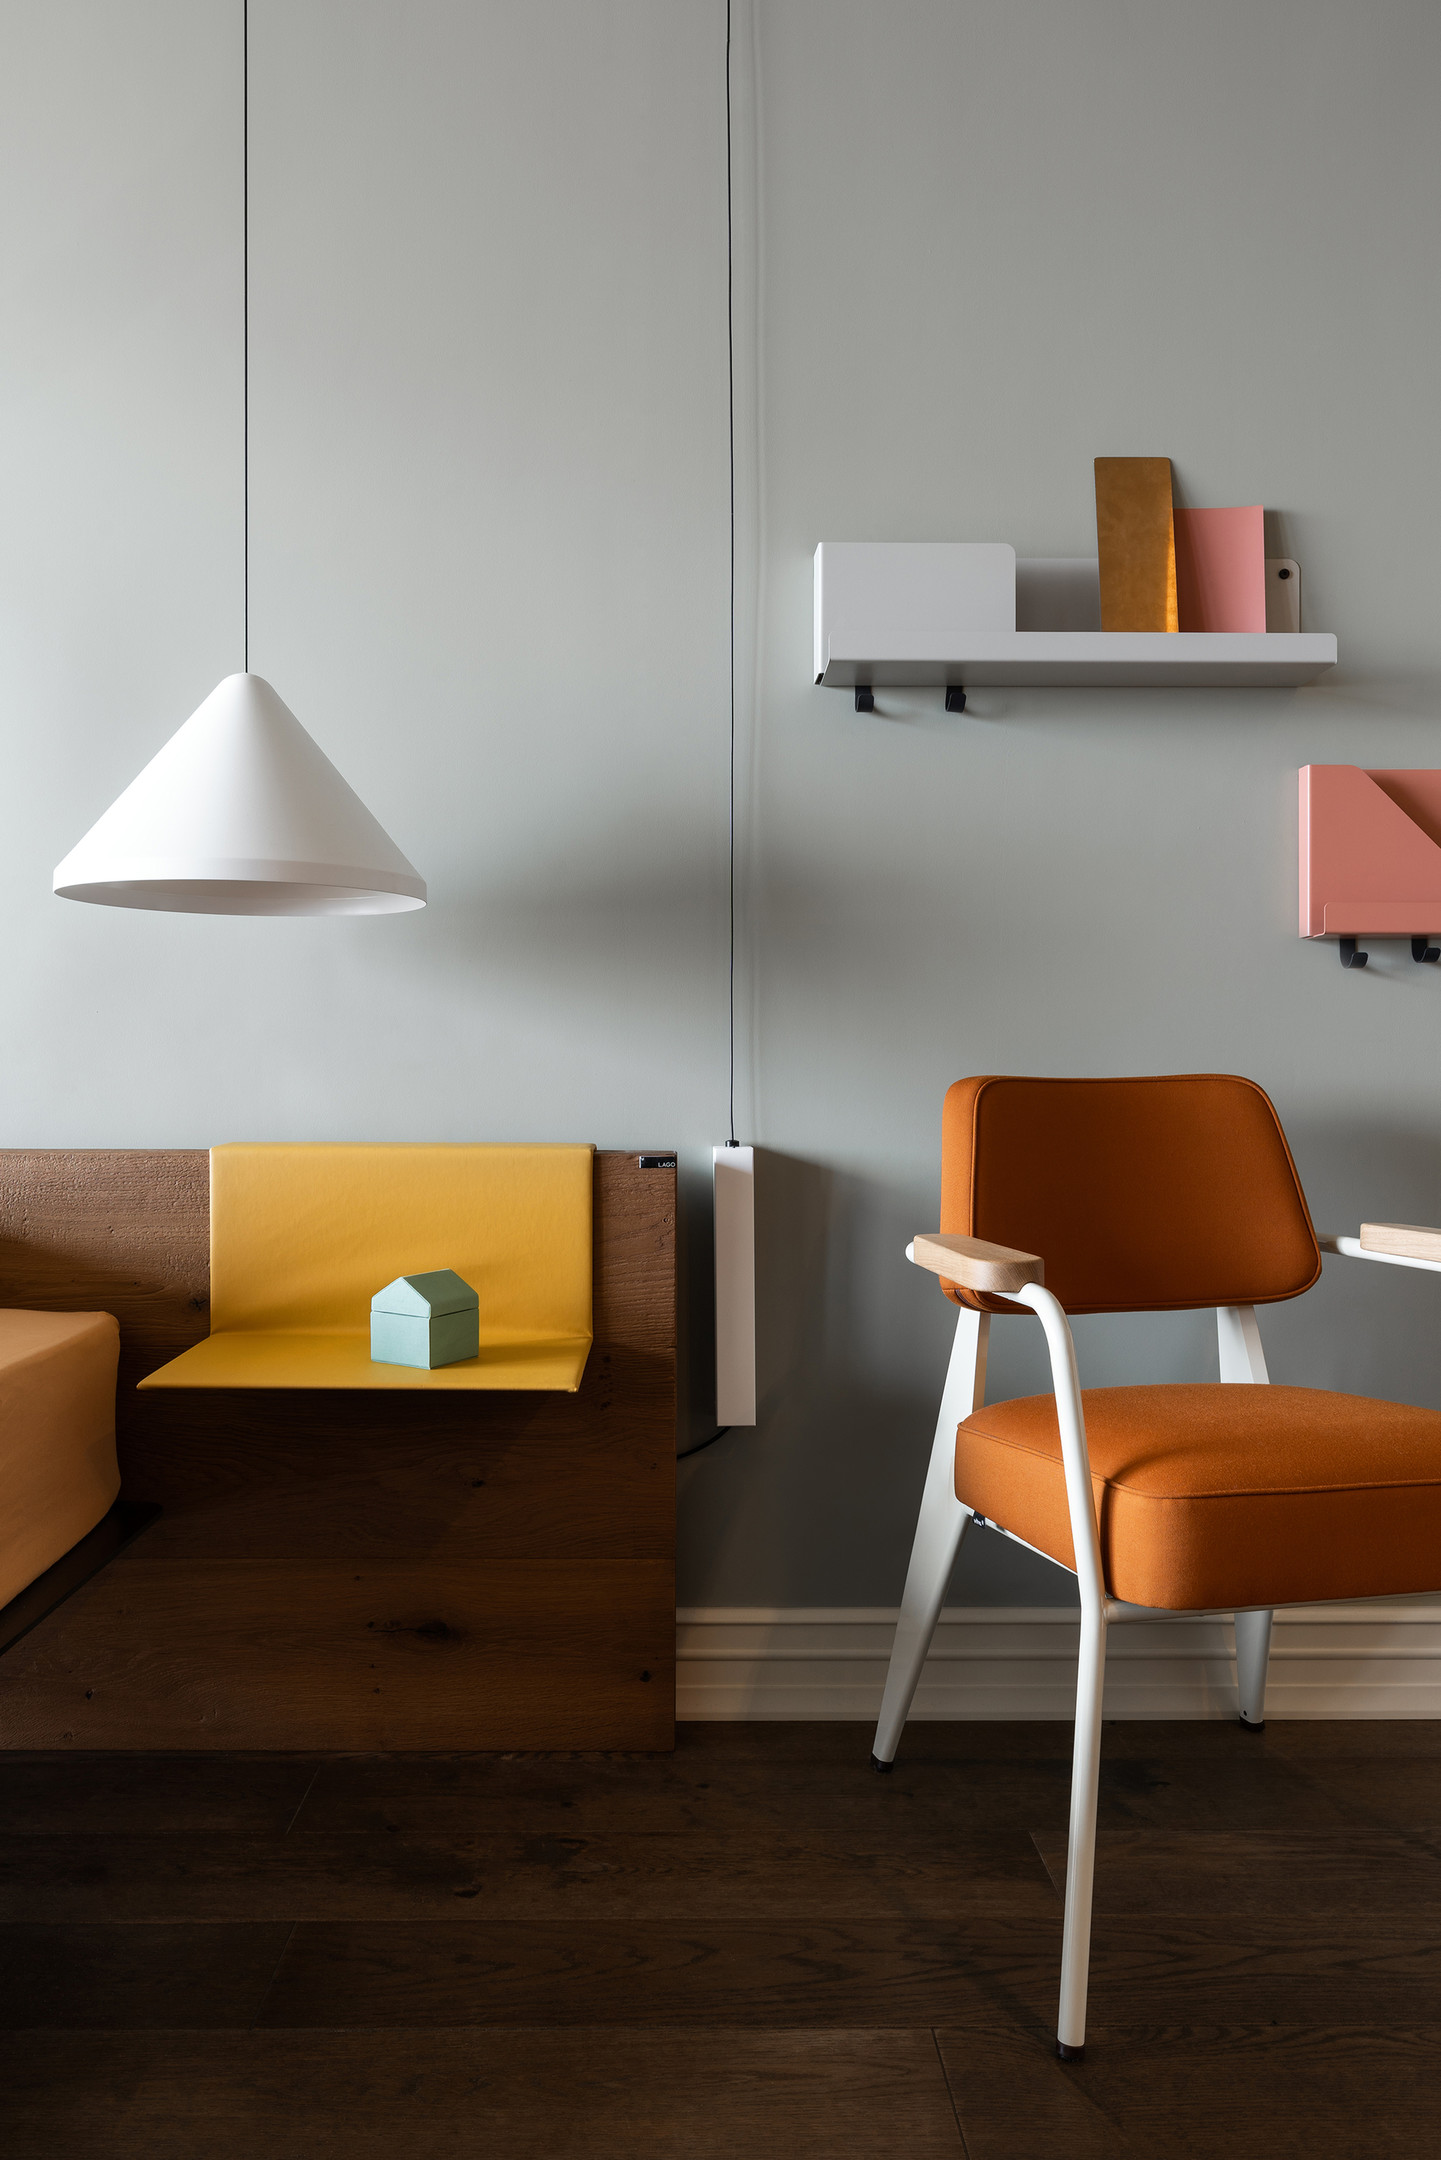 Những mẫu kệ trong bộ sưu tập mới ra mắt của Rina Lovko Studio cho phép người sử dụng có thể gắn lên tường, treo trên ghế,... đơn giản mà tiện ích, thể hiện rõ sự linh hoạt trong nhiều không gian của các thiết kế.